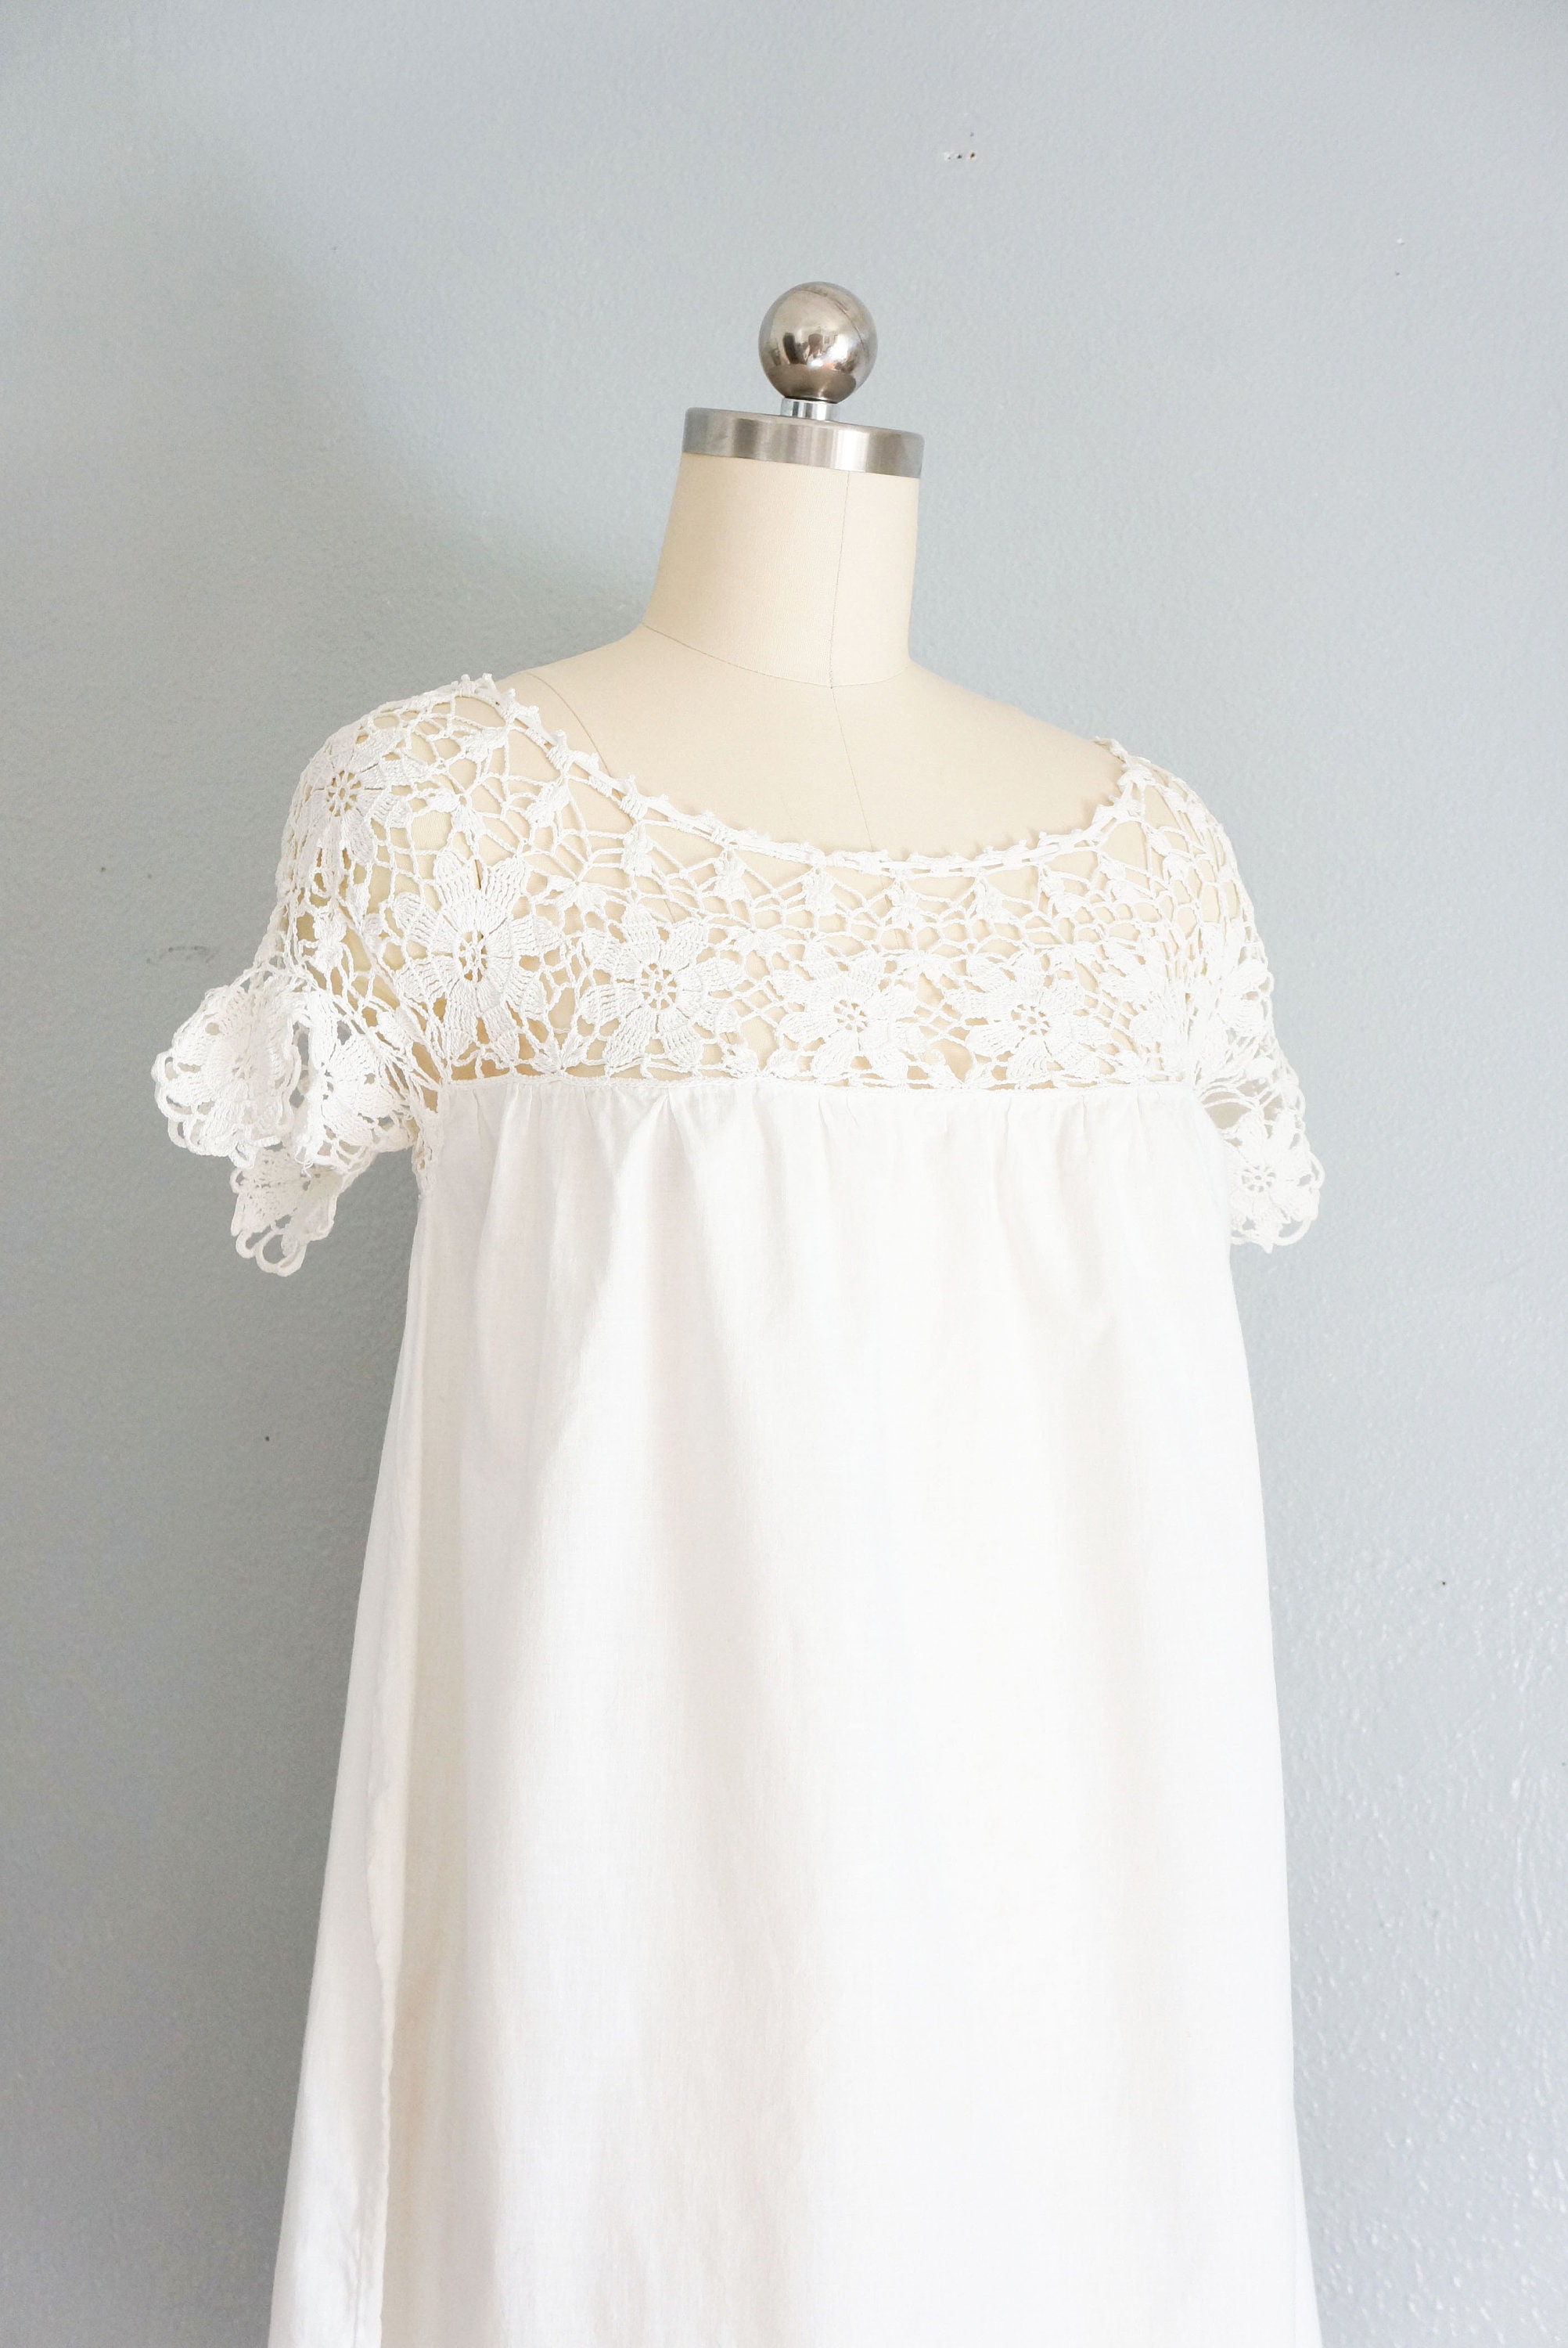 Edwardian Delicate White Cotton Crochet Gown Antique Crochet - Etsy